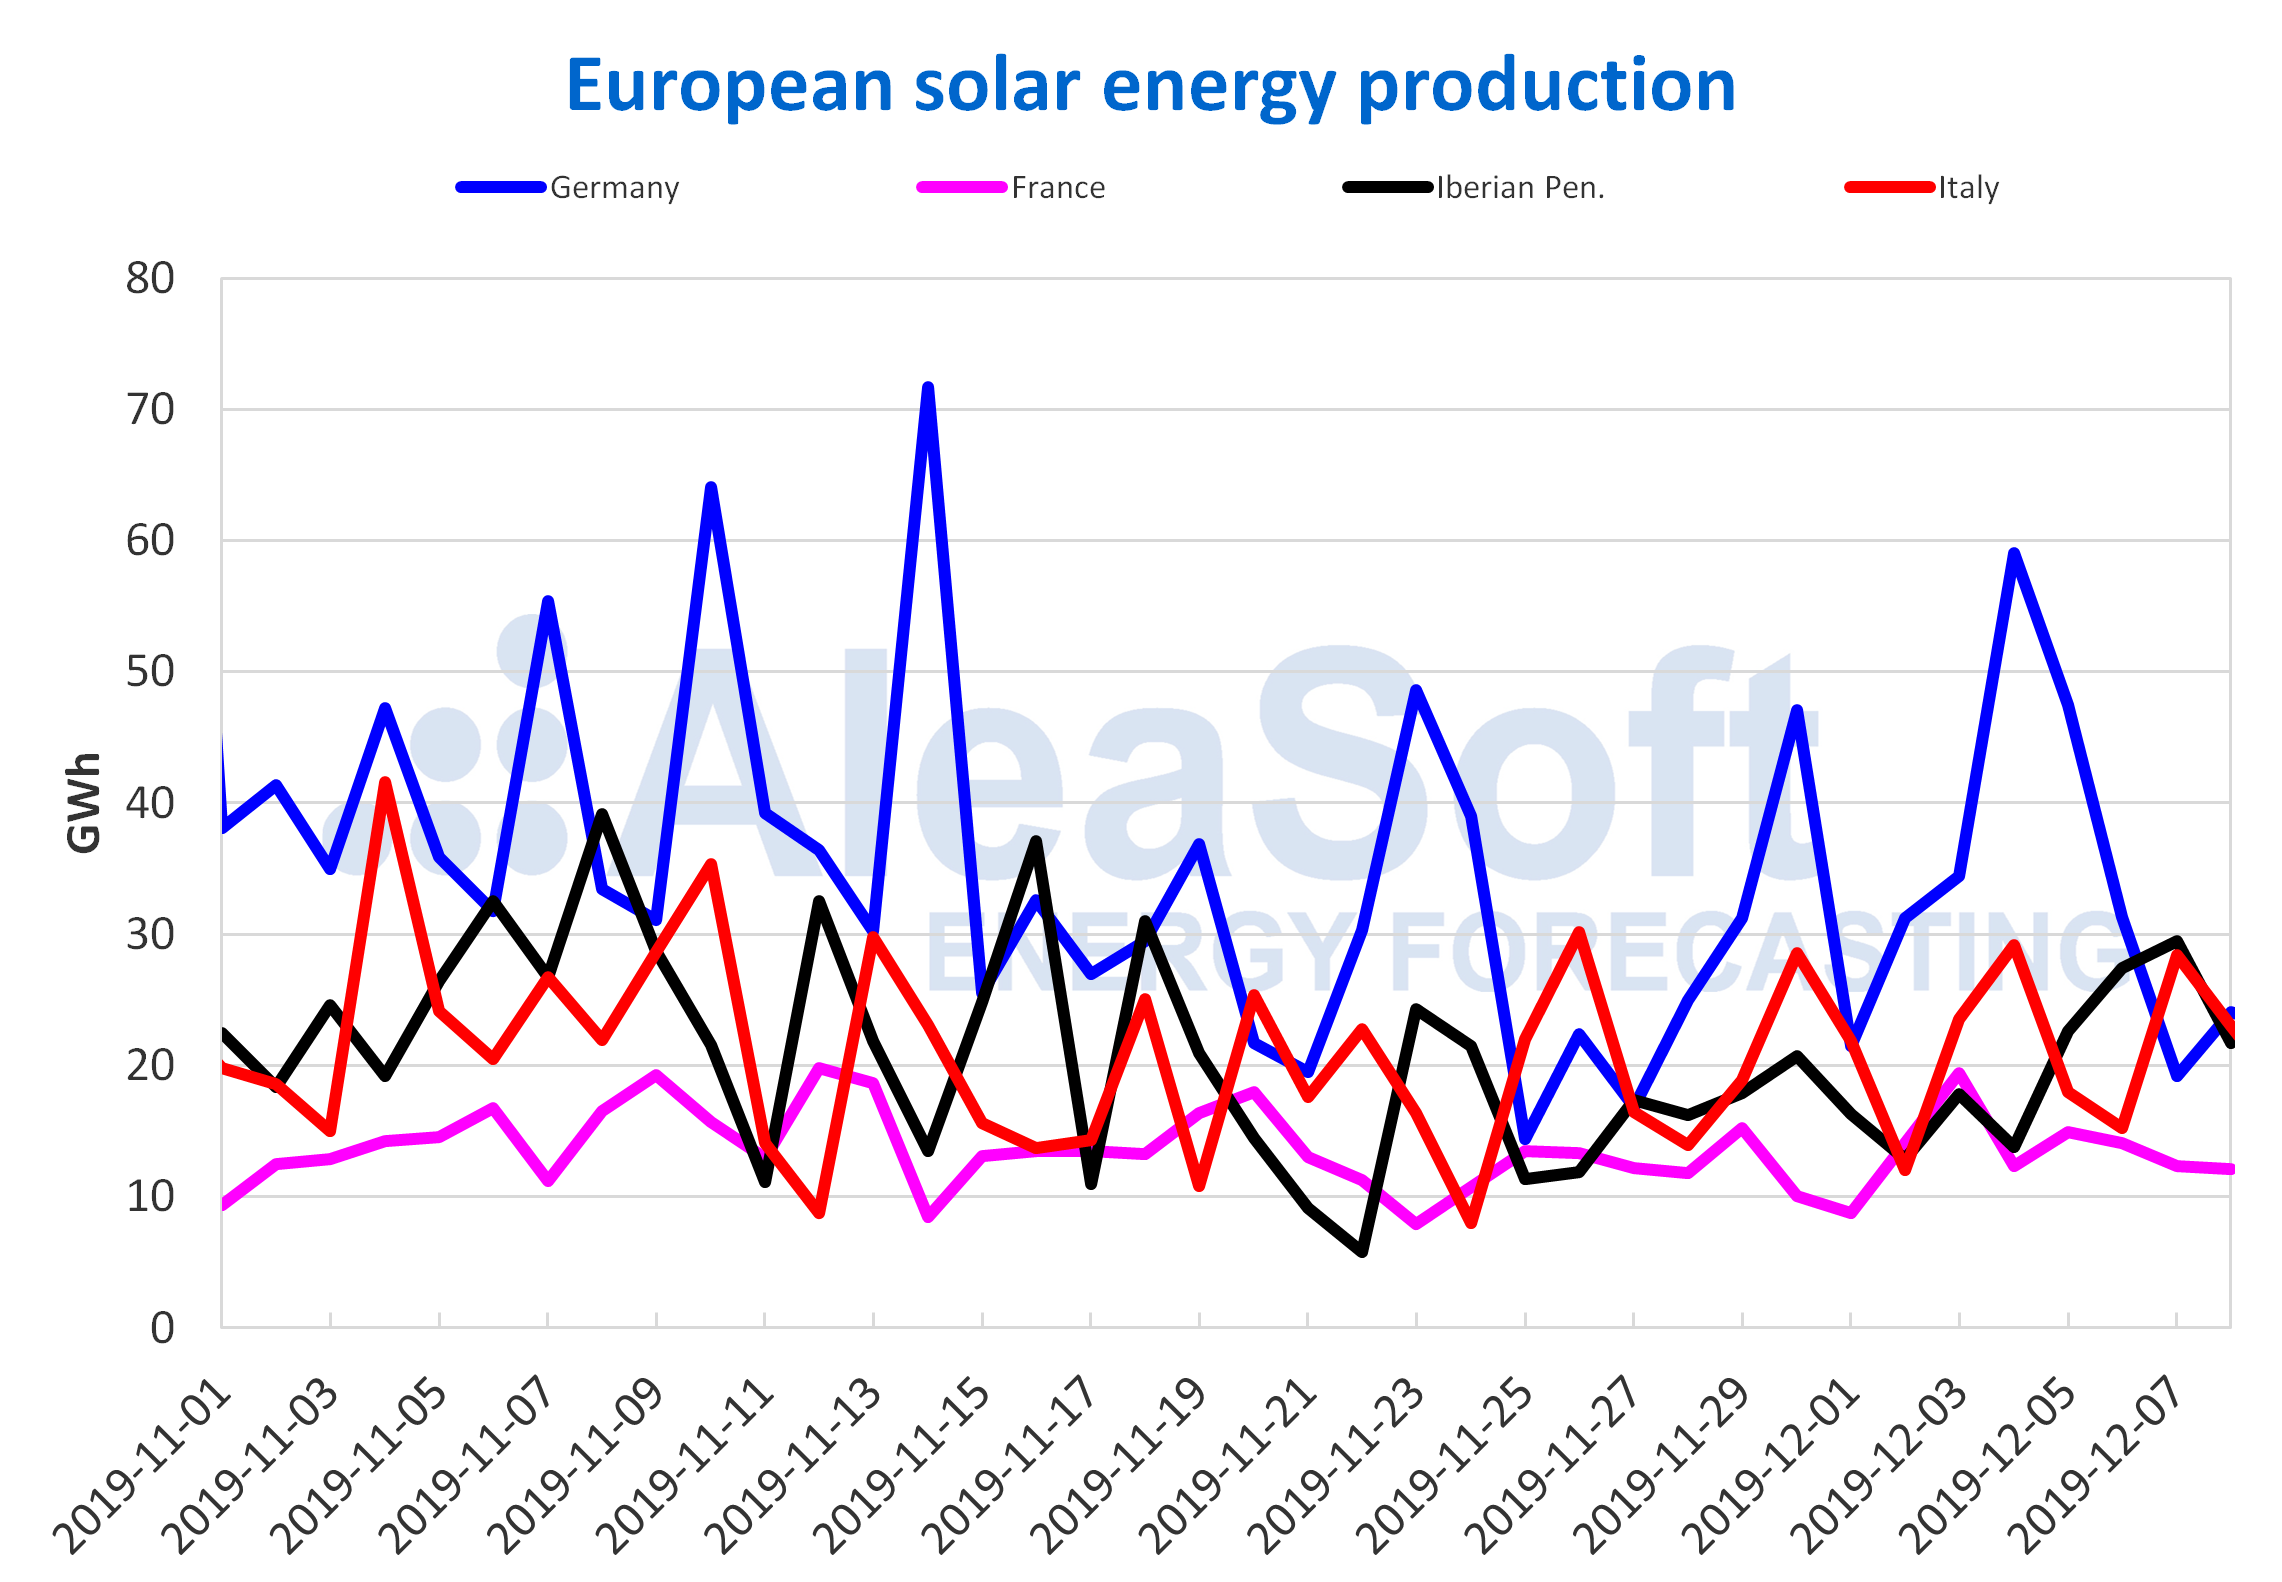 AleaSoft - European solar energy production